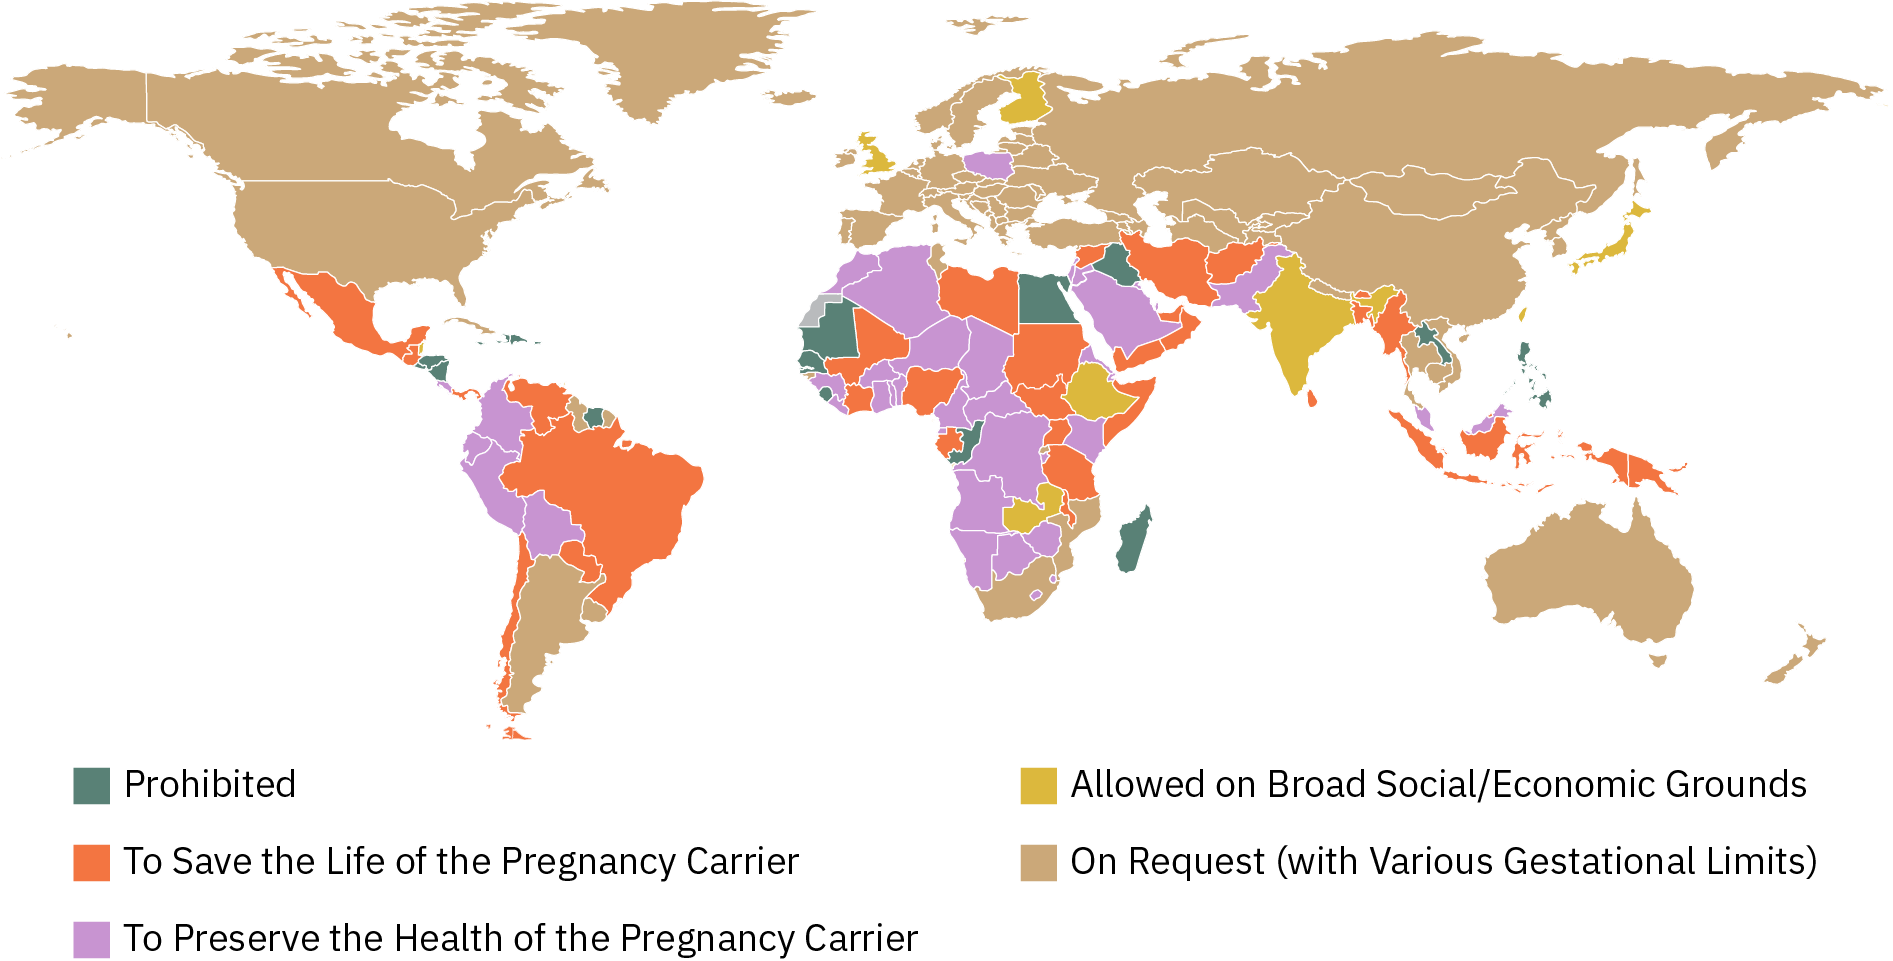 Карта світу з затіненням для позначення законності абортів. У наступних країнах/регіонах аборти доступні за запитом, з різними гестаційними обмеженнями: Росія, Туреччина, Китай, Австралія, більша частина Європи, Канада, США, Аргентина та Південна Африка. У наступних країнах/регіонах аборти допускаються за широкими соціальними/економічними ознаками: Індія, Японія, Фінляндія, Англія, Ефіопія, Демократична Республіка Конго. У наступних країнах/регіонах аборт дозволений для збереження або збереження здоров'я носія вагітності: більша частина Африки, більша частина Південної Америки, більша частина Близького Сходу, Мексика та Польща. У наступних країнах/регіонах аборти заборонені повністю: Єгипет, Іран, Філіппіни, частини Африки, зілля Центральної Америки.